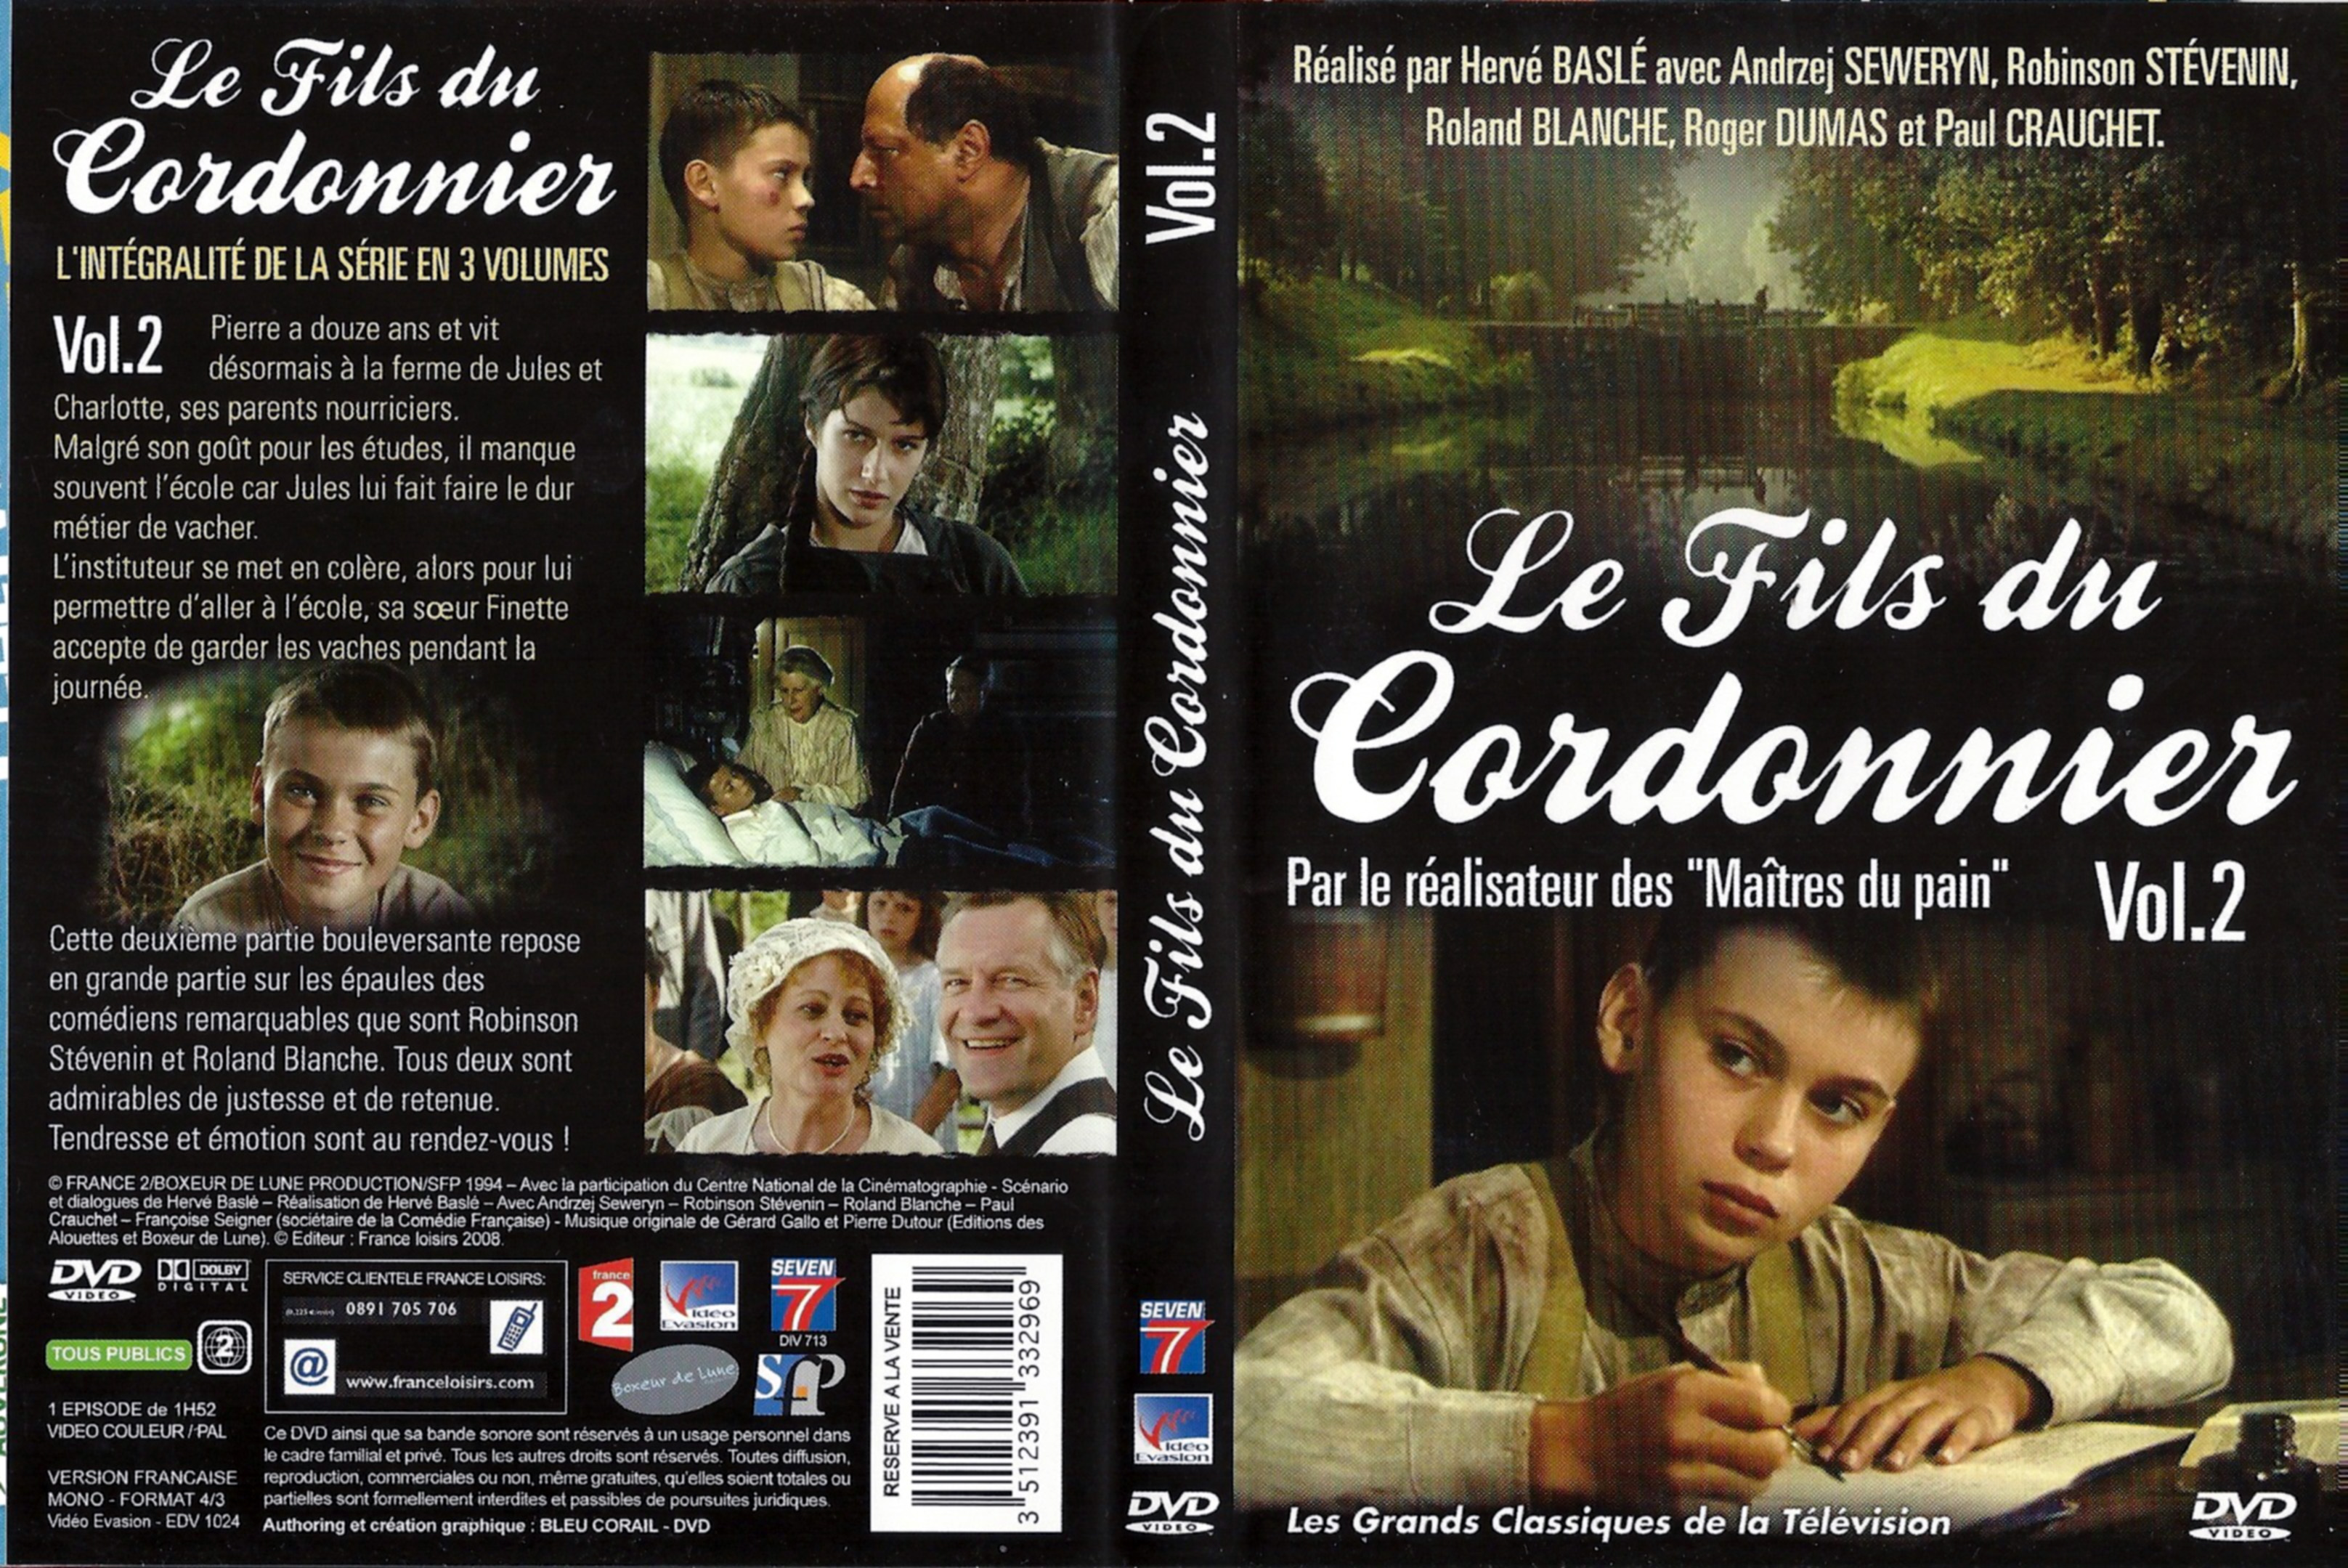 Jaquette DVD Le fils du cordonnier vol 02